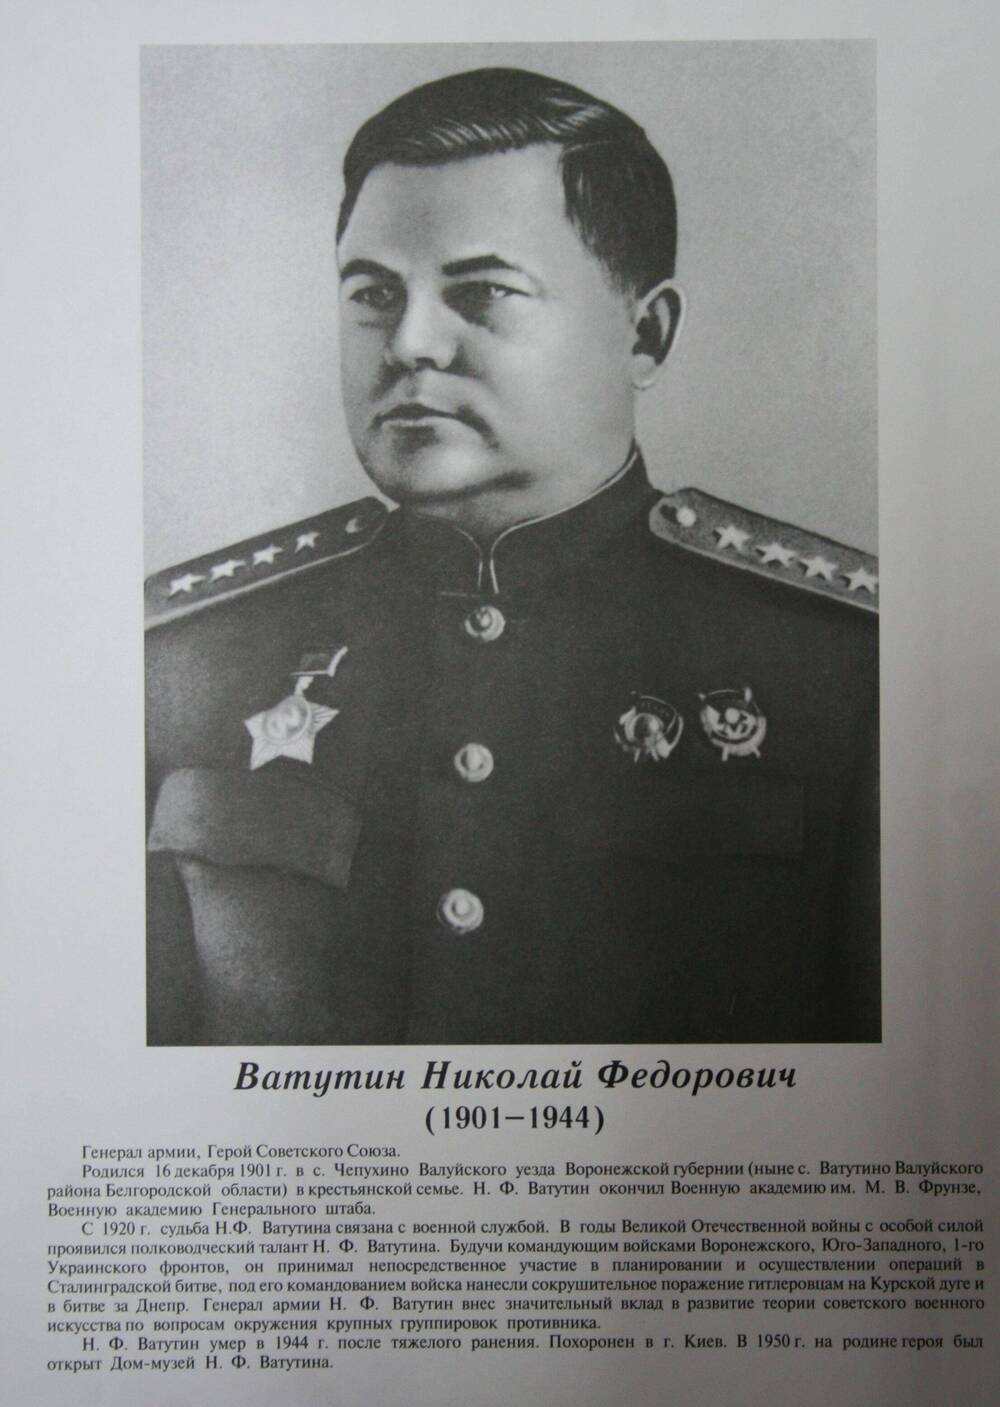 Плакат (фотопортрет) из комплекта Галерея славных имен Белгородчины. Ватутин Николай Федорович (1901-1944).